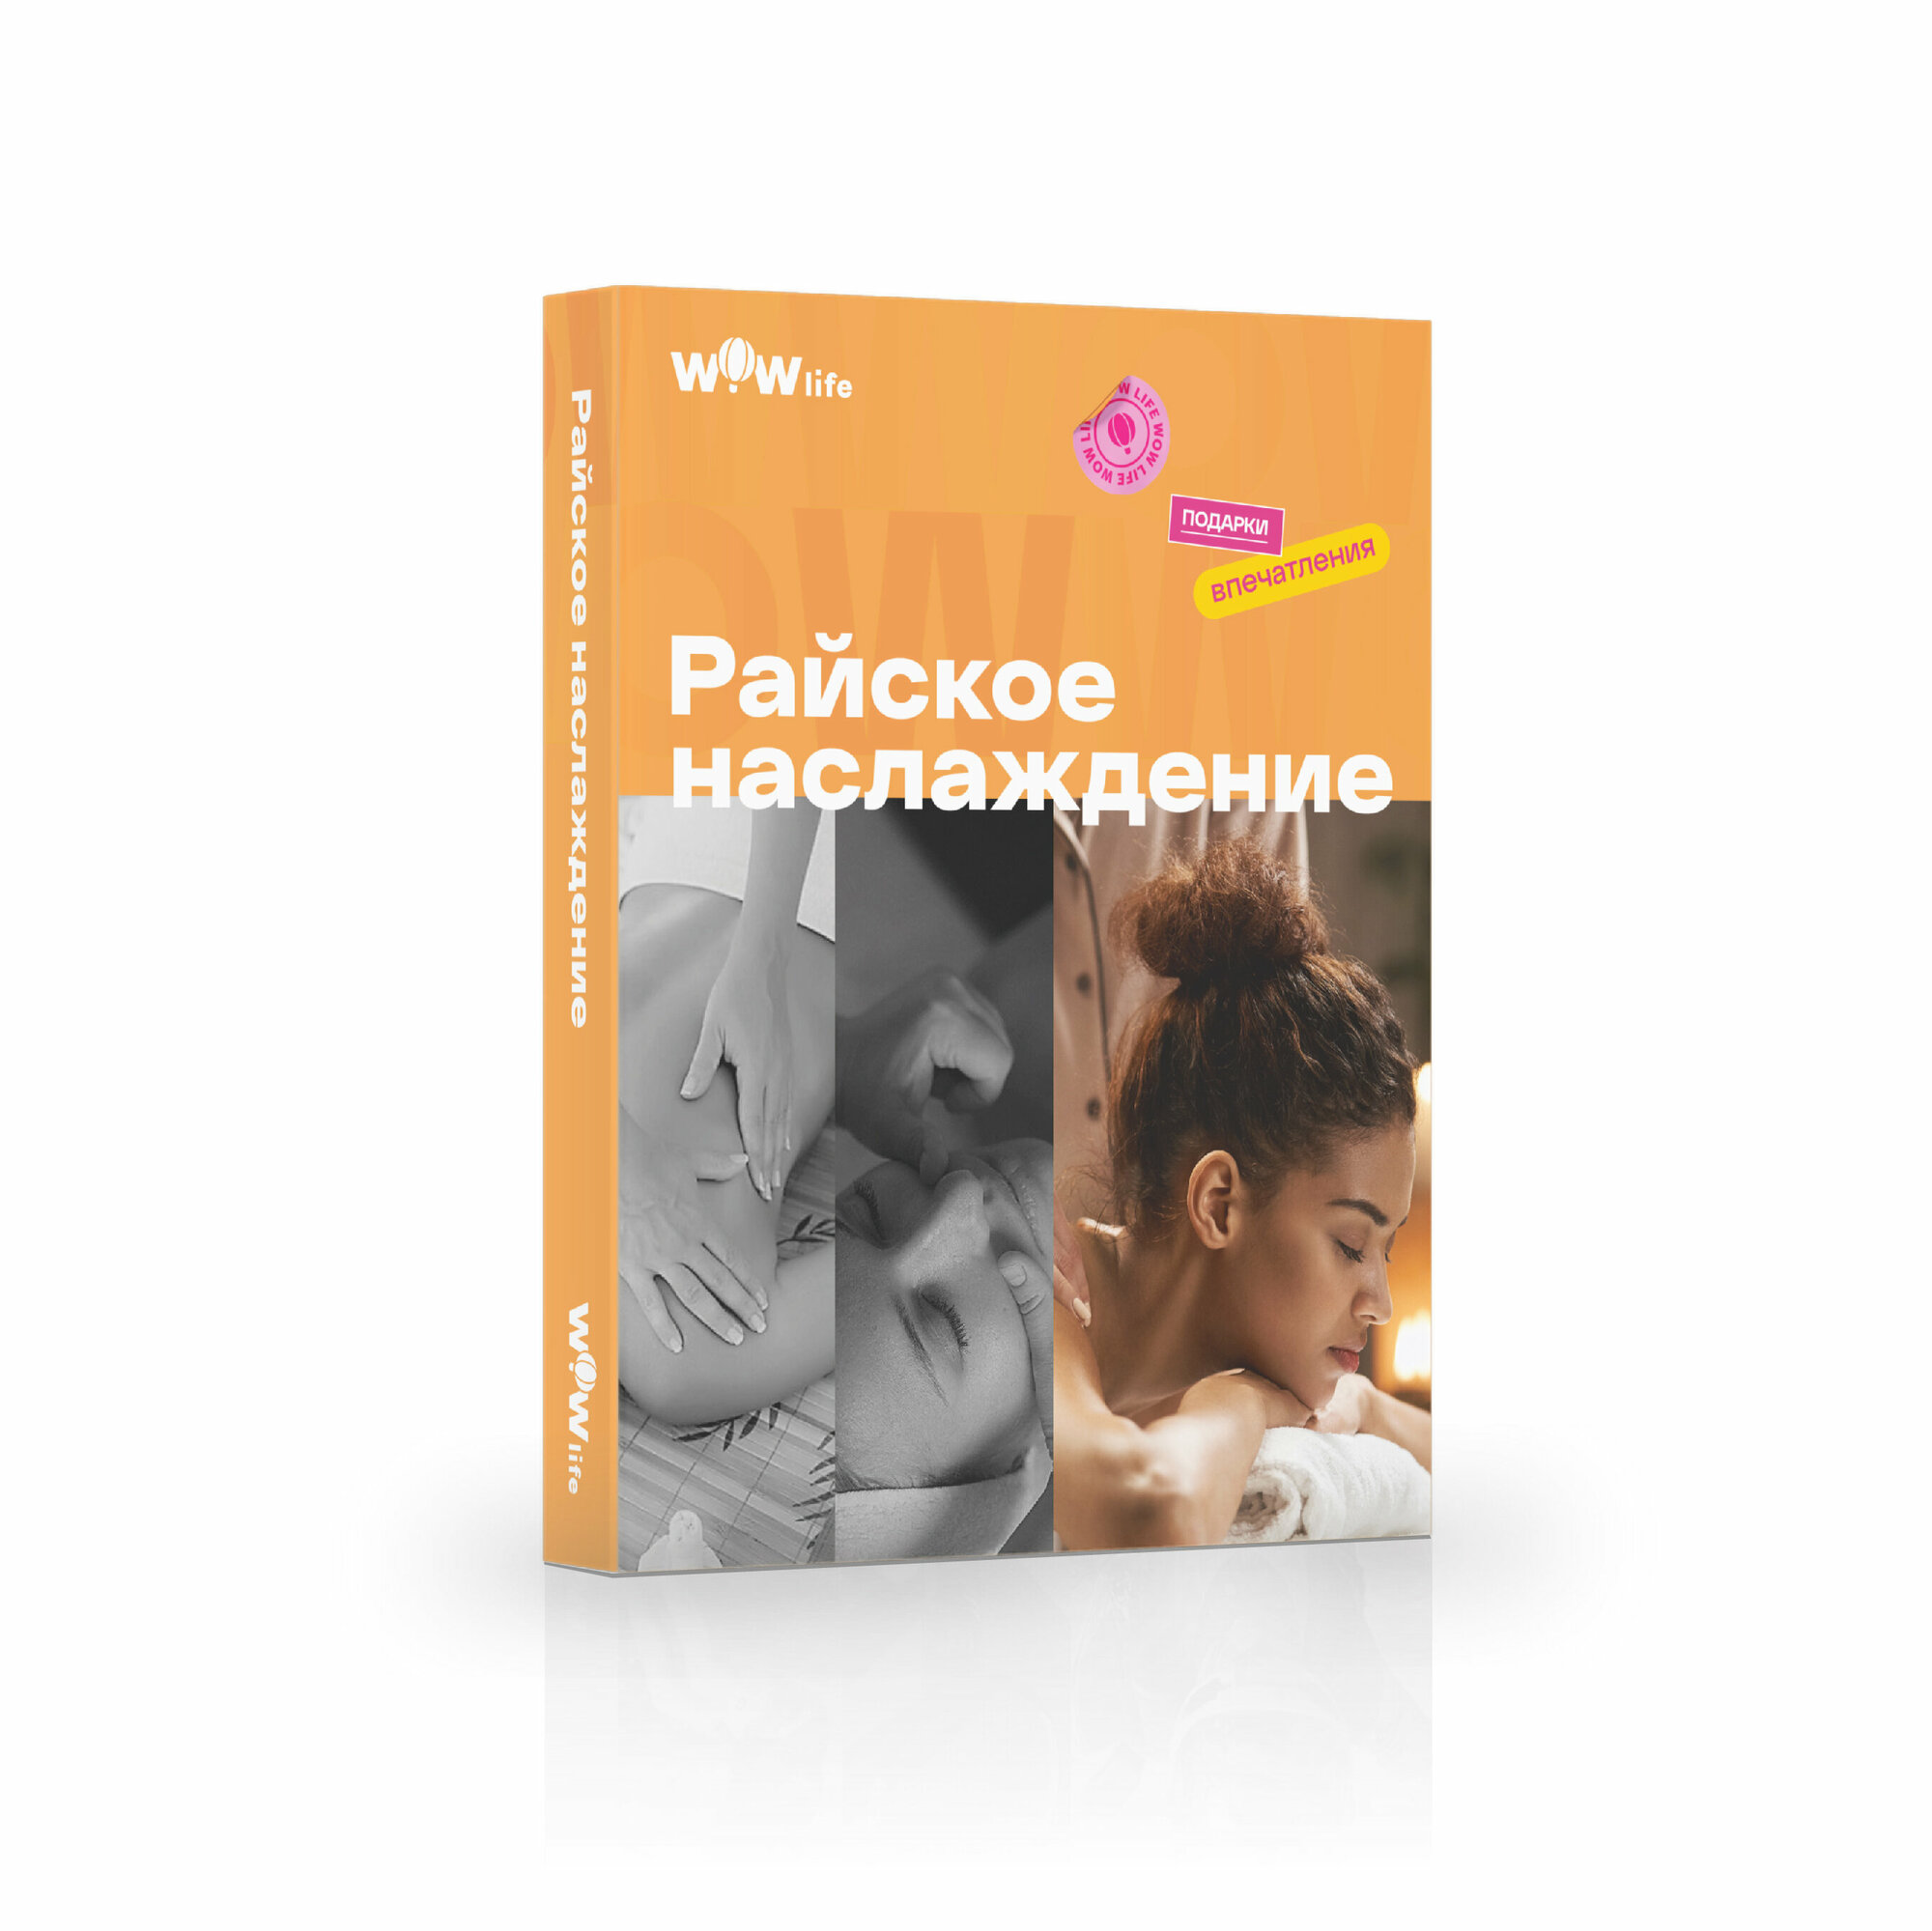 Подарочный сертификат WOWlife "Райское наслаждение" - набор из впечатлений на выбор, Москва